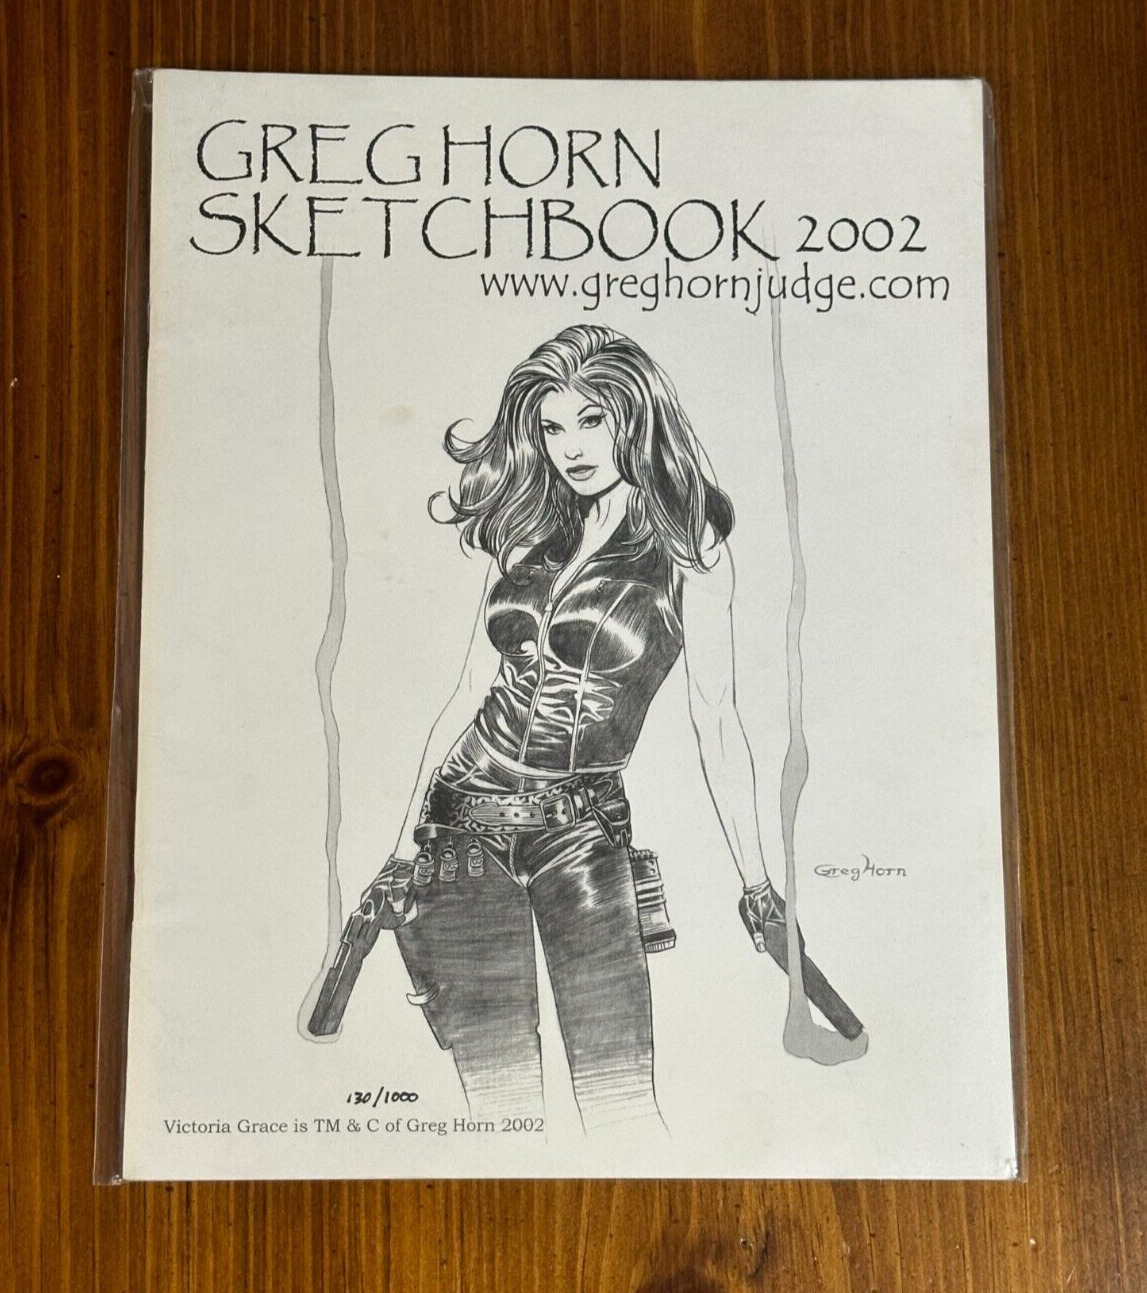 Greg Horn Sketchbook 2002 Limited Numbered 130/1000 OOP